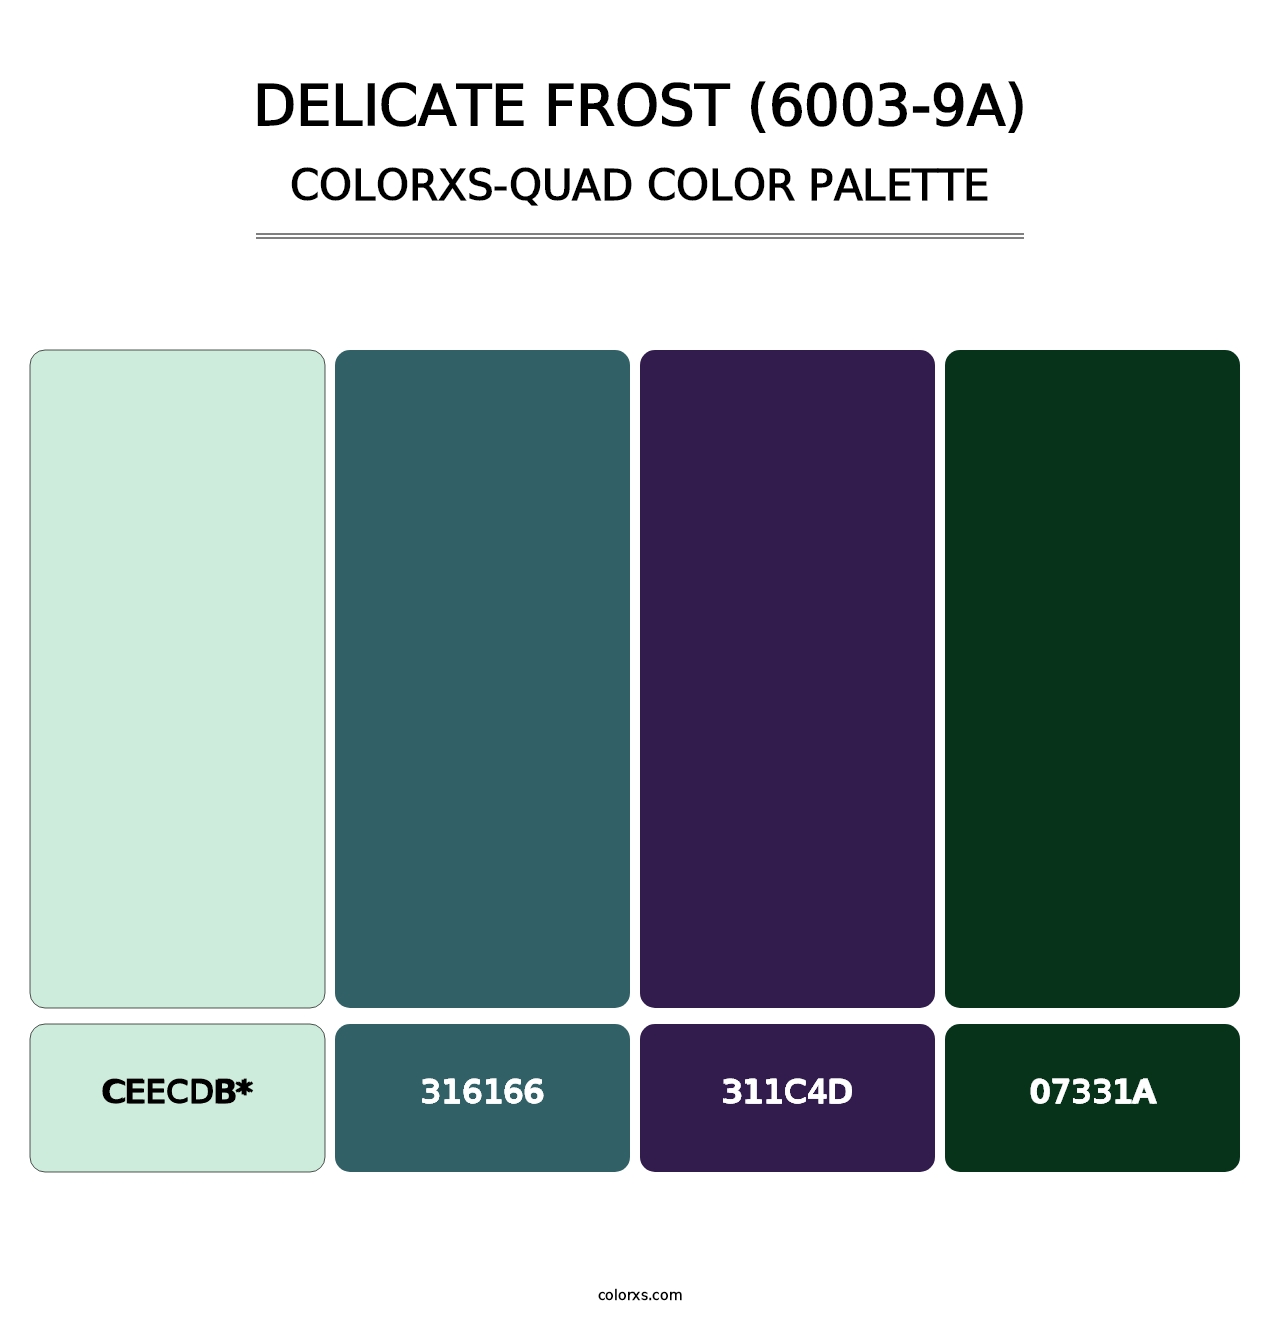 Delicate Frost (6003-9A) - Colorxs Quad Palette